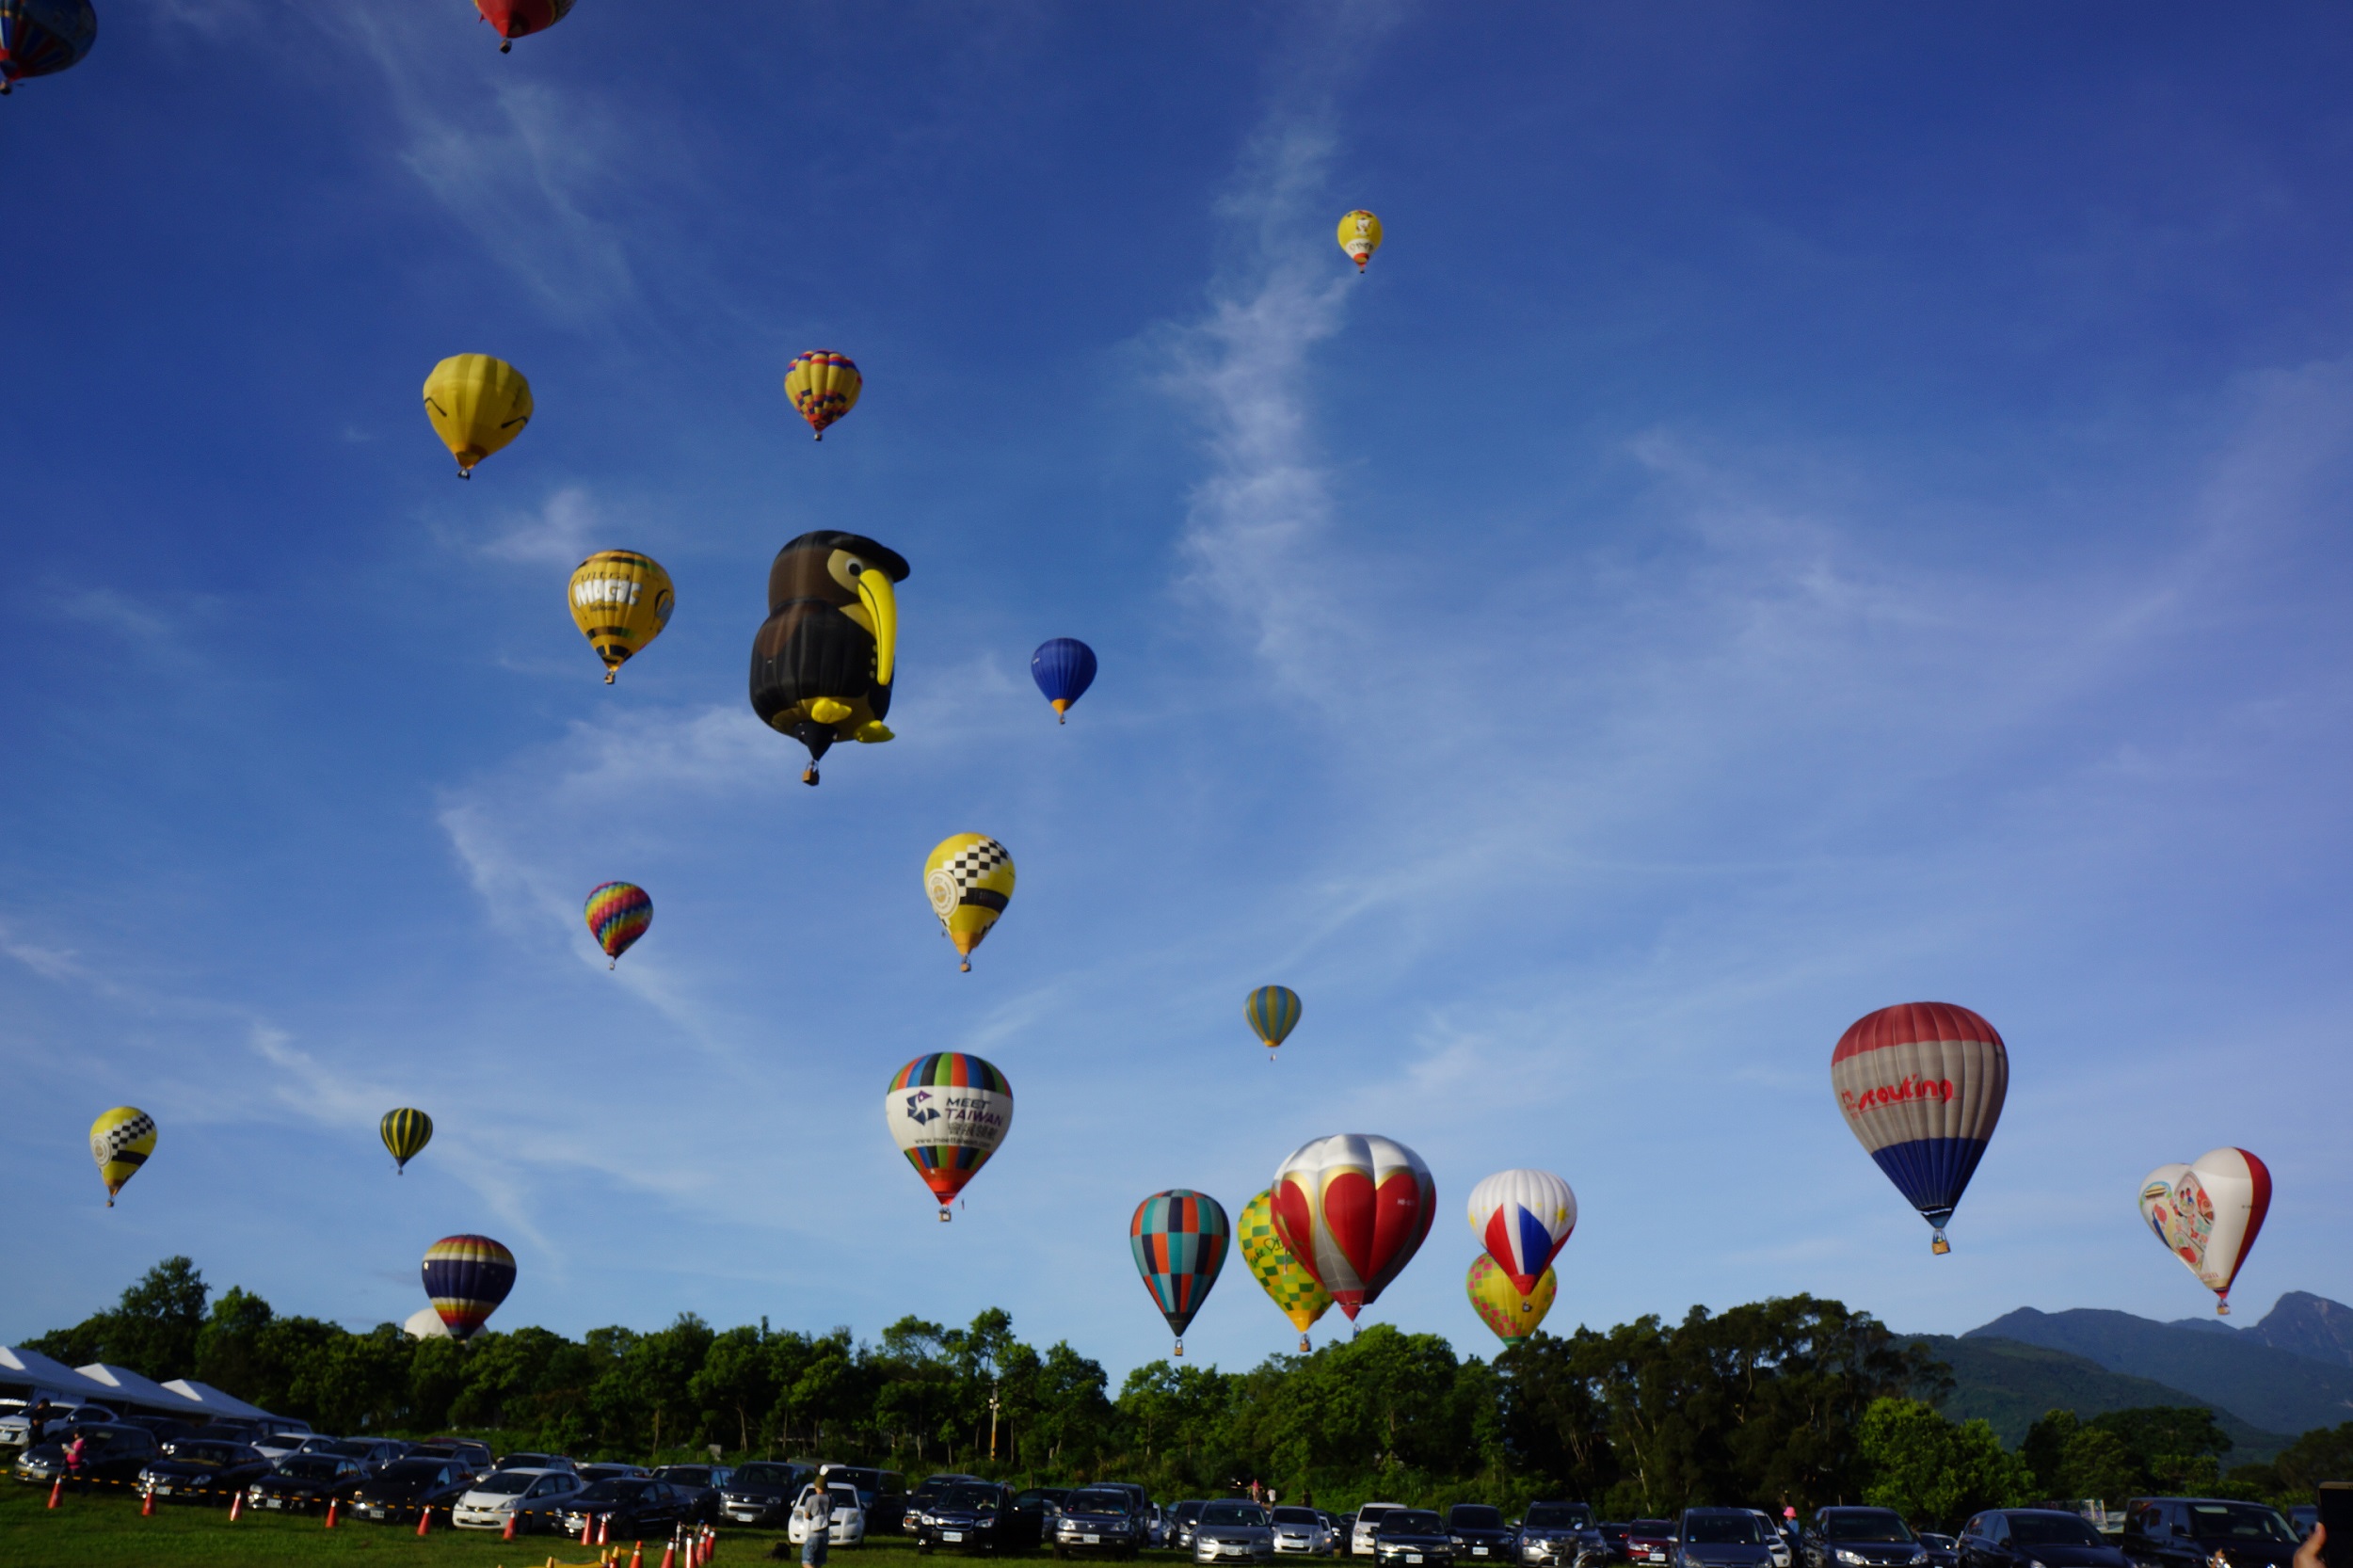 2016 air balloon festival in Taiwan1